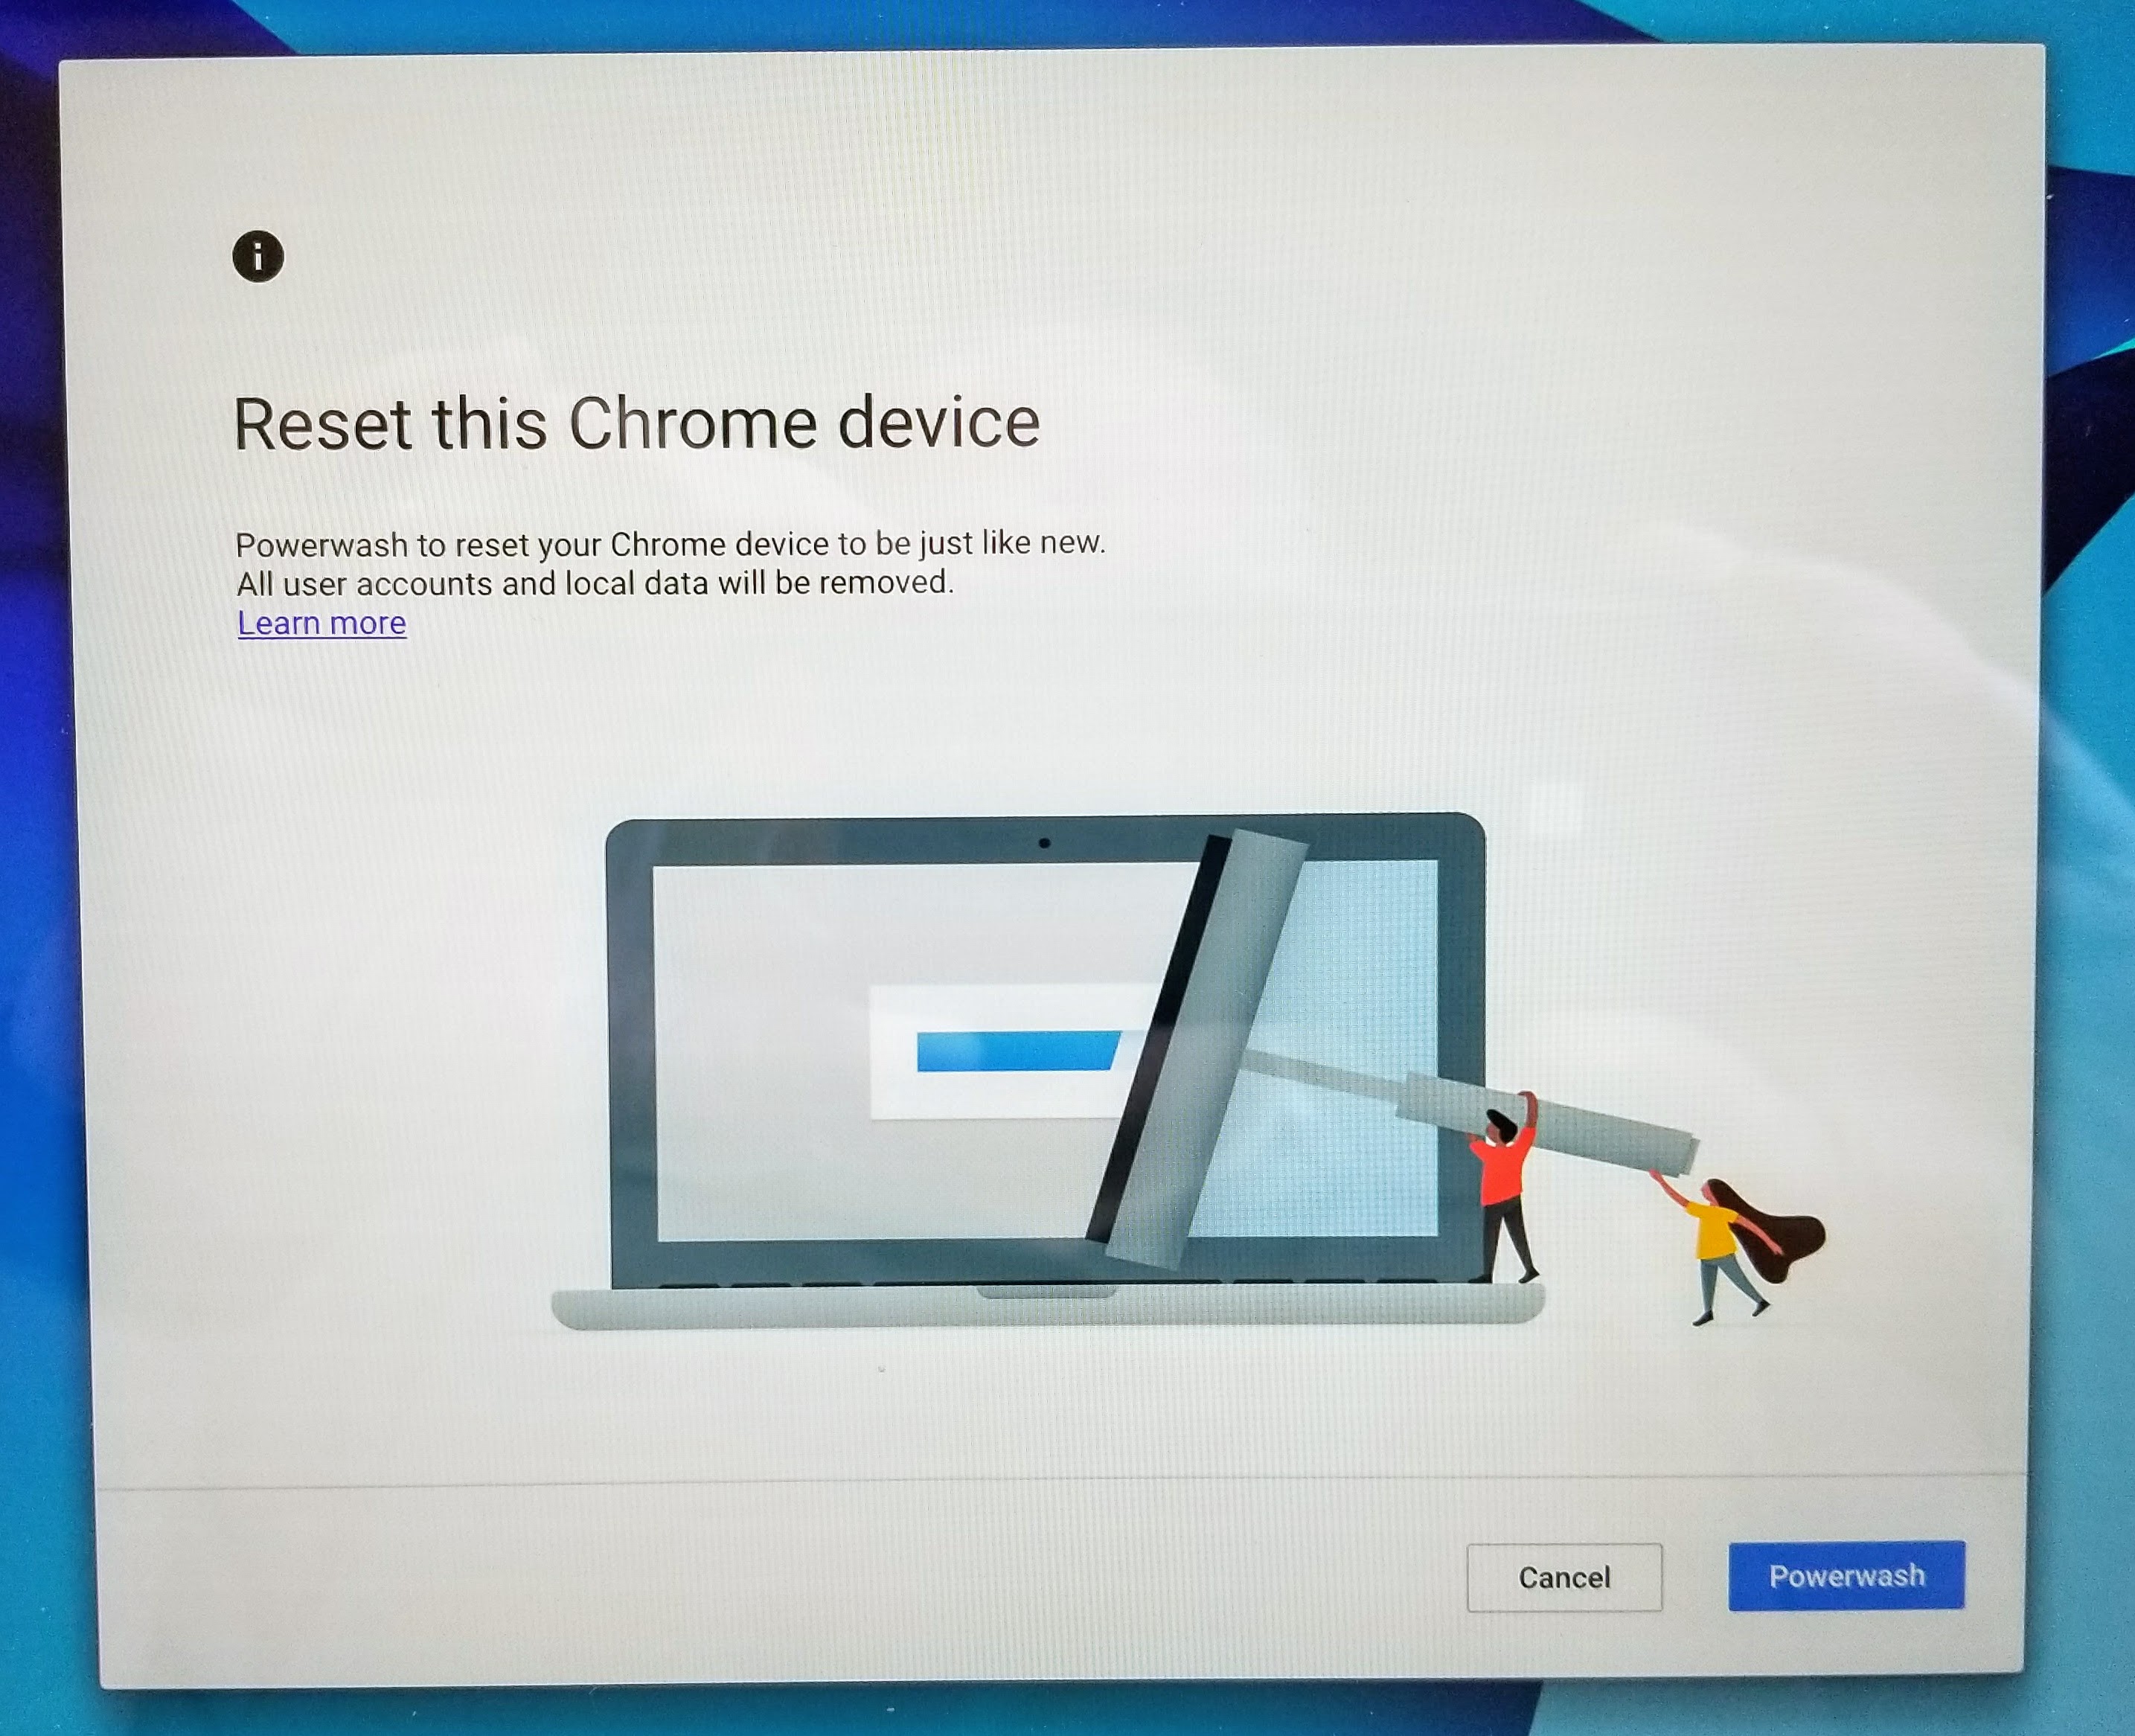 haga clic en powerwash cuando se reinicie Chromebook